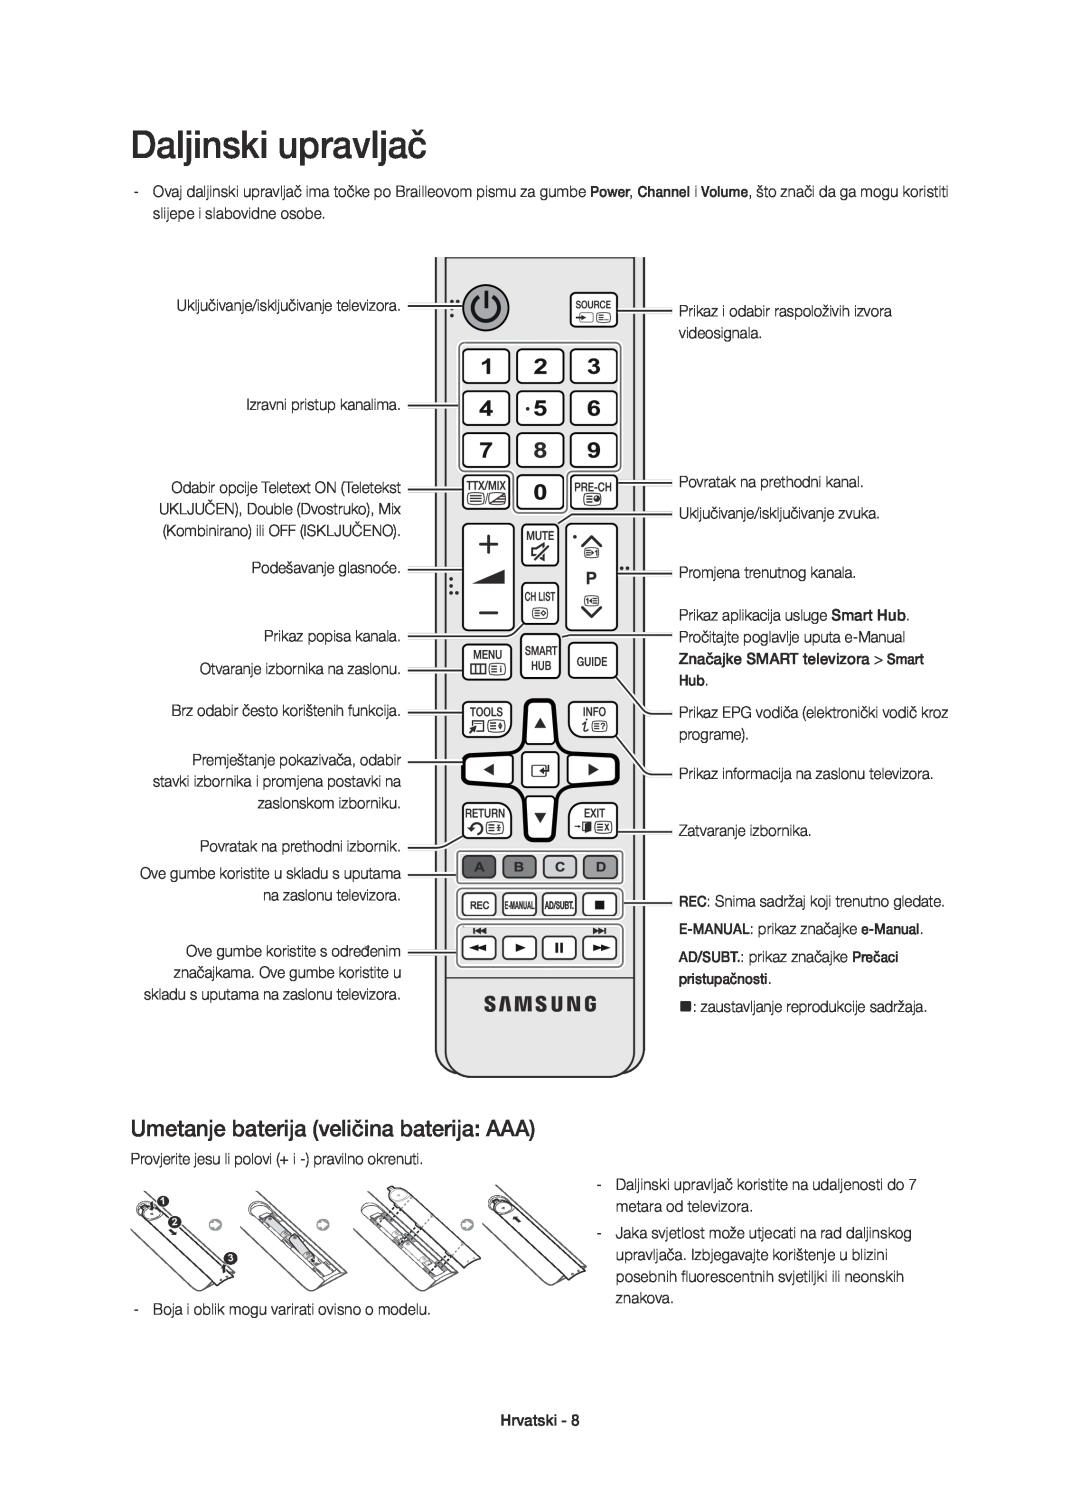 Samsung UE32H6410SSXXC manual Umetanje baterija veličina baterija AAA, E-MANUAL prikaz značajke e-Manual, pristupačnosti 